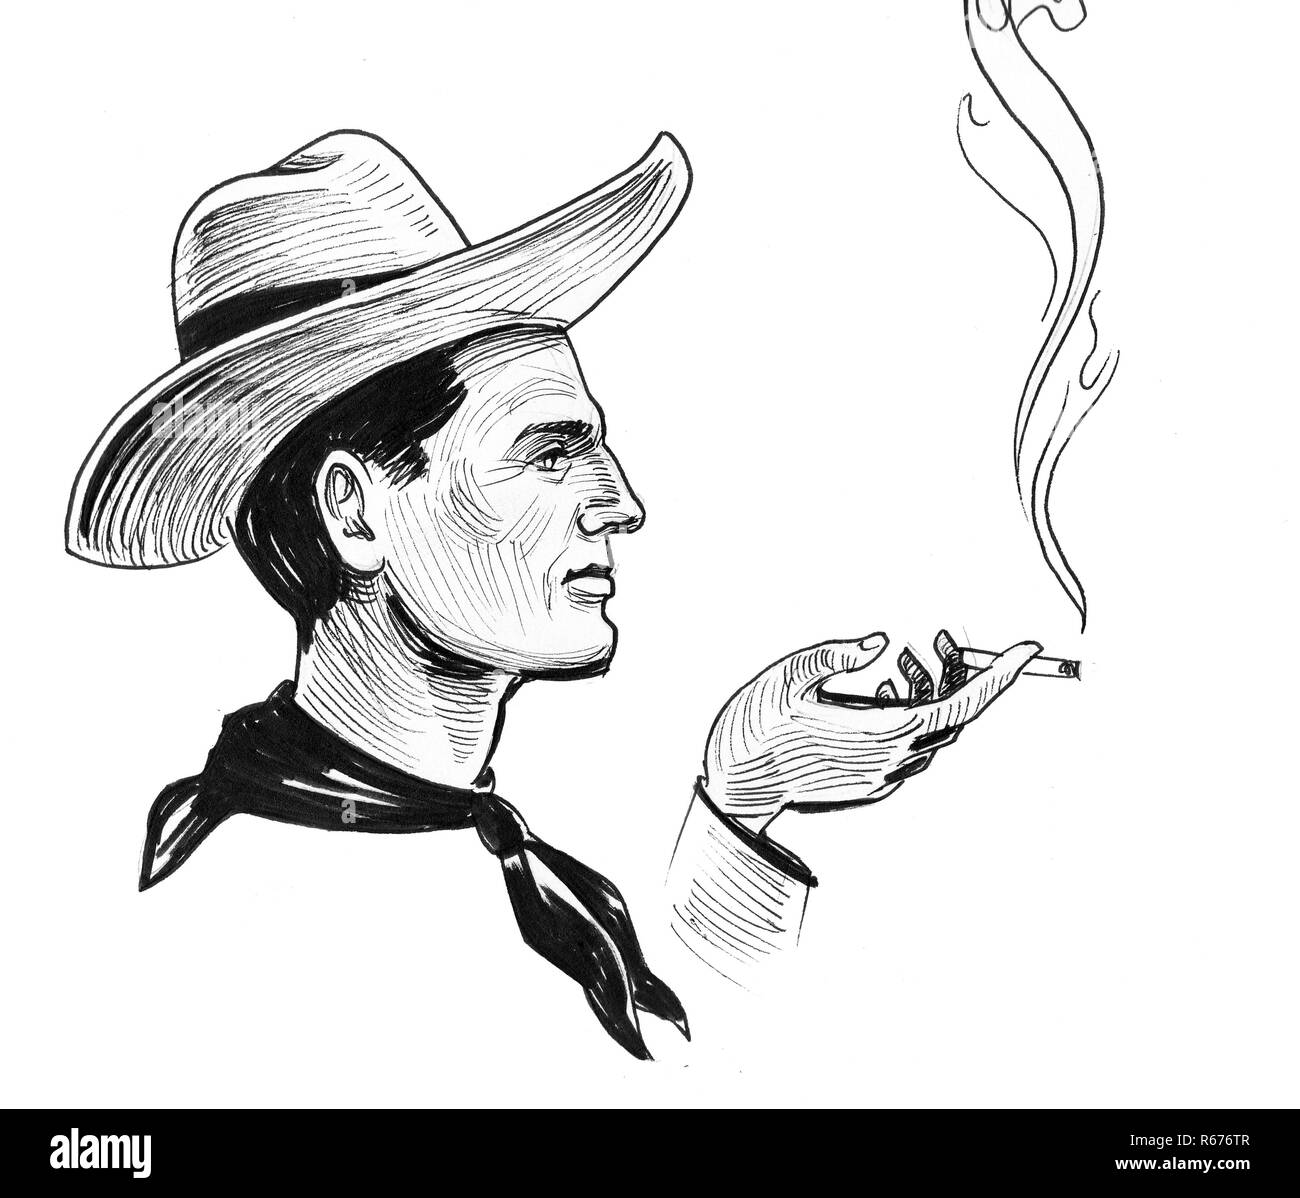 Cowboy Charakter in Hut mit einem rauchen Zigarette. Tinte schwarz-weiss Zeichnung Stockfoto